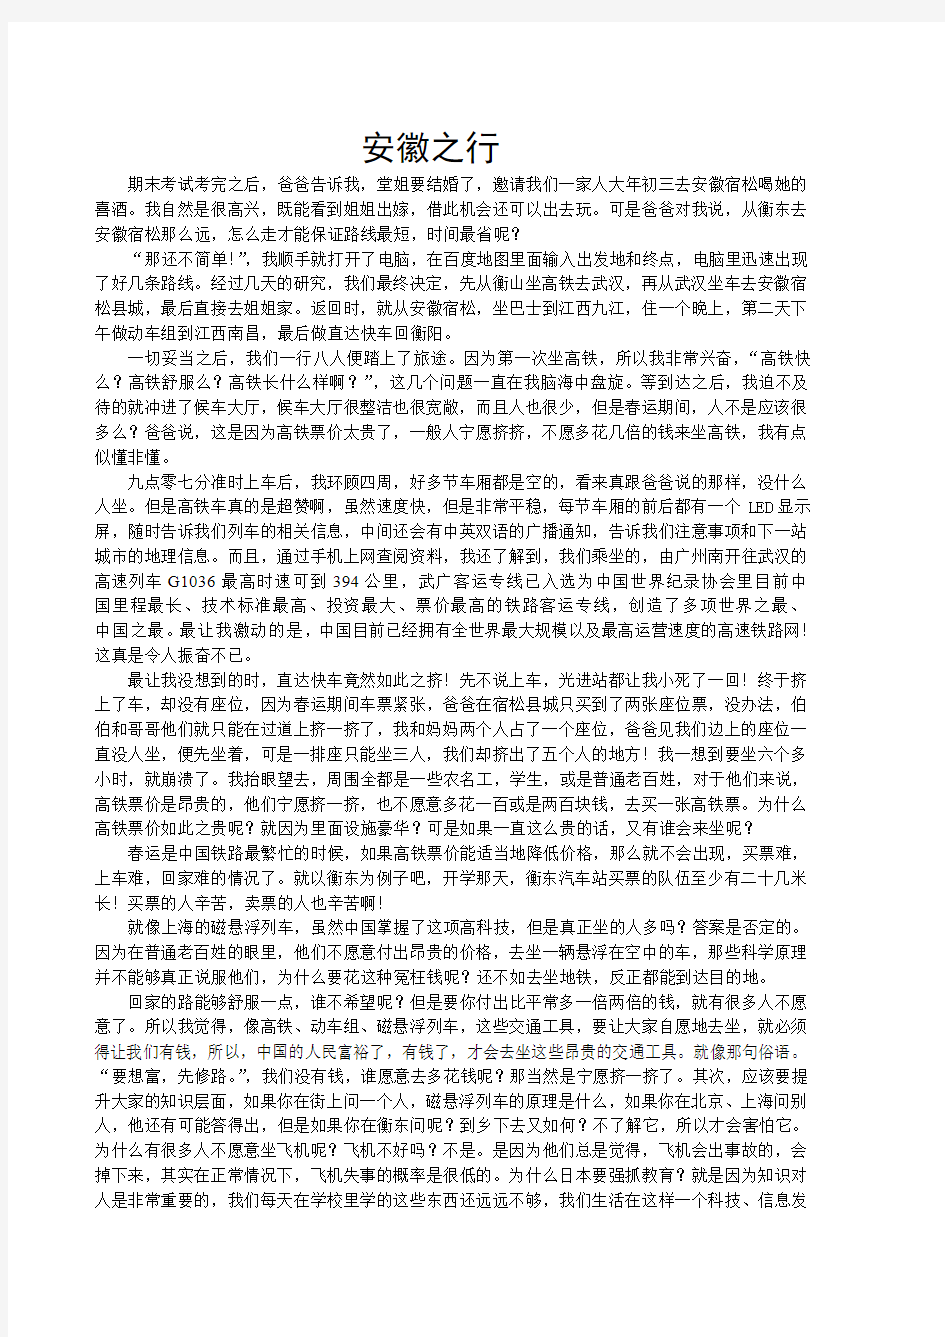 关于中国铁路的调查报告